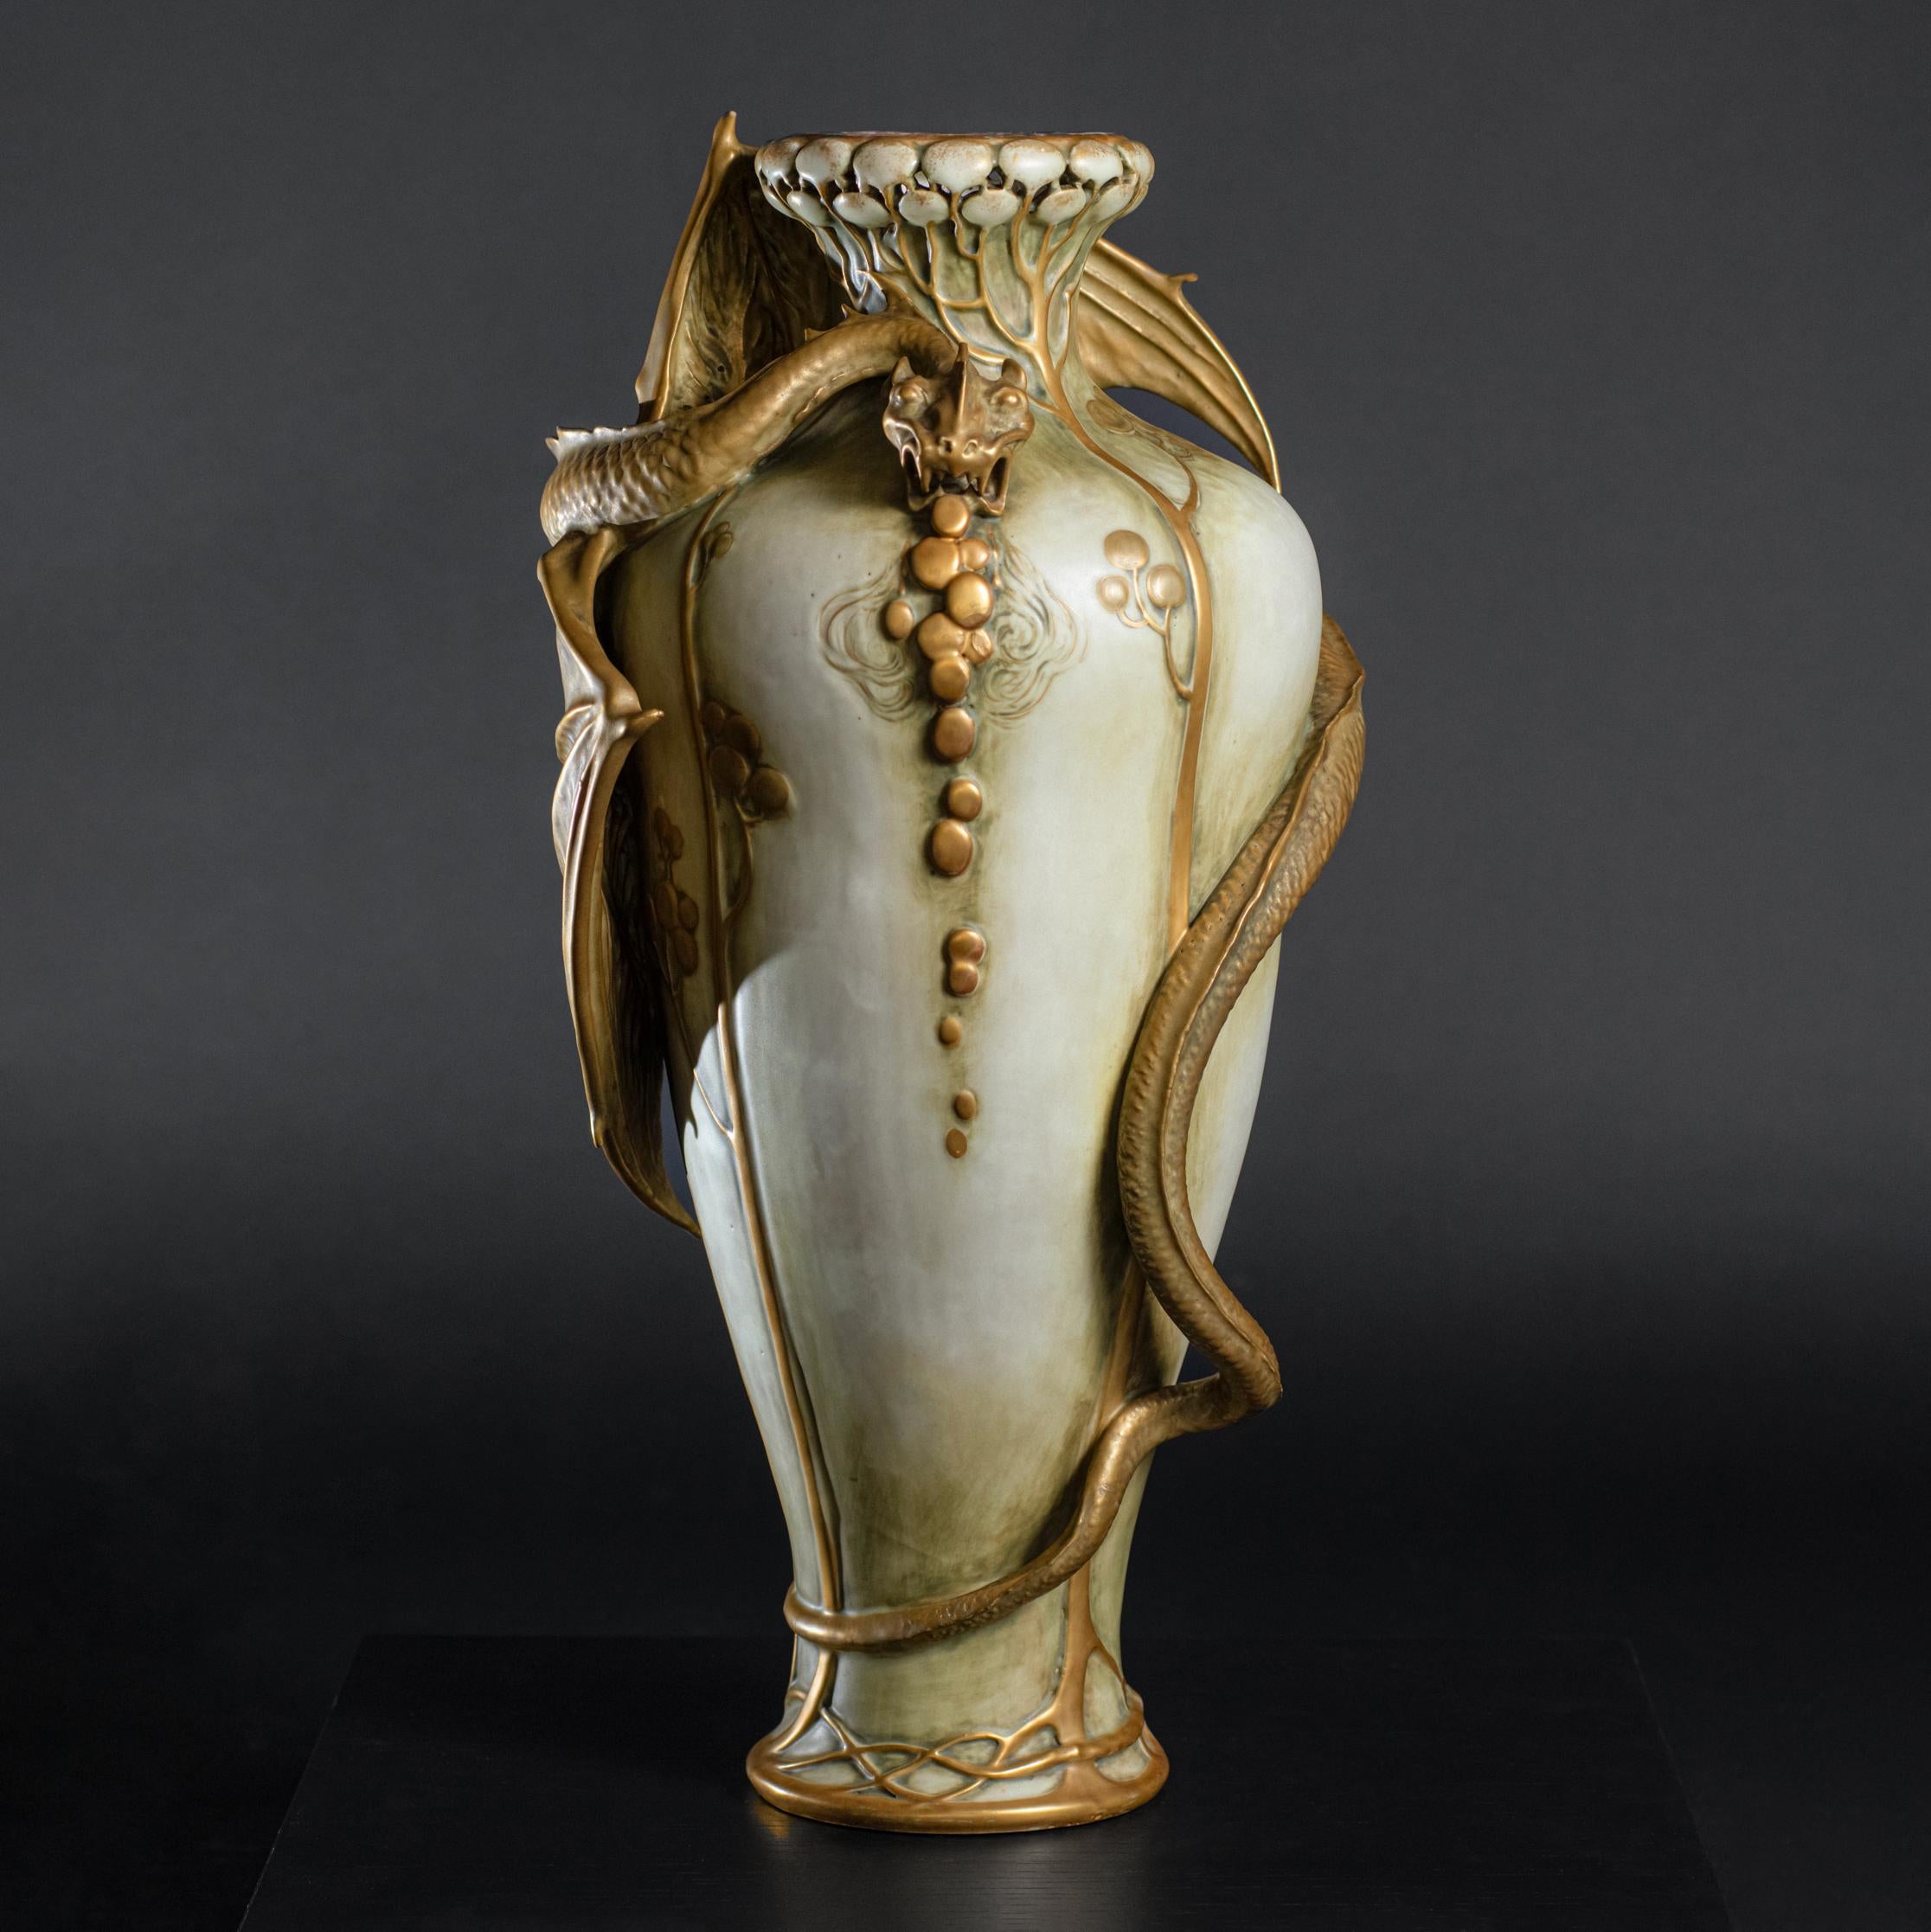 Paul Dachsel était le gendre d'Alfred Stellmacher, le fondateur de la société de poterie Amphora à Turn-Teplitz, alors en Autriche. Très peu de choses sont connues ou ont été écrites sur Dachsel. Il a travaillé comme designer à Amphora de 1893 à